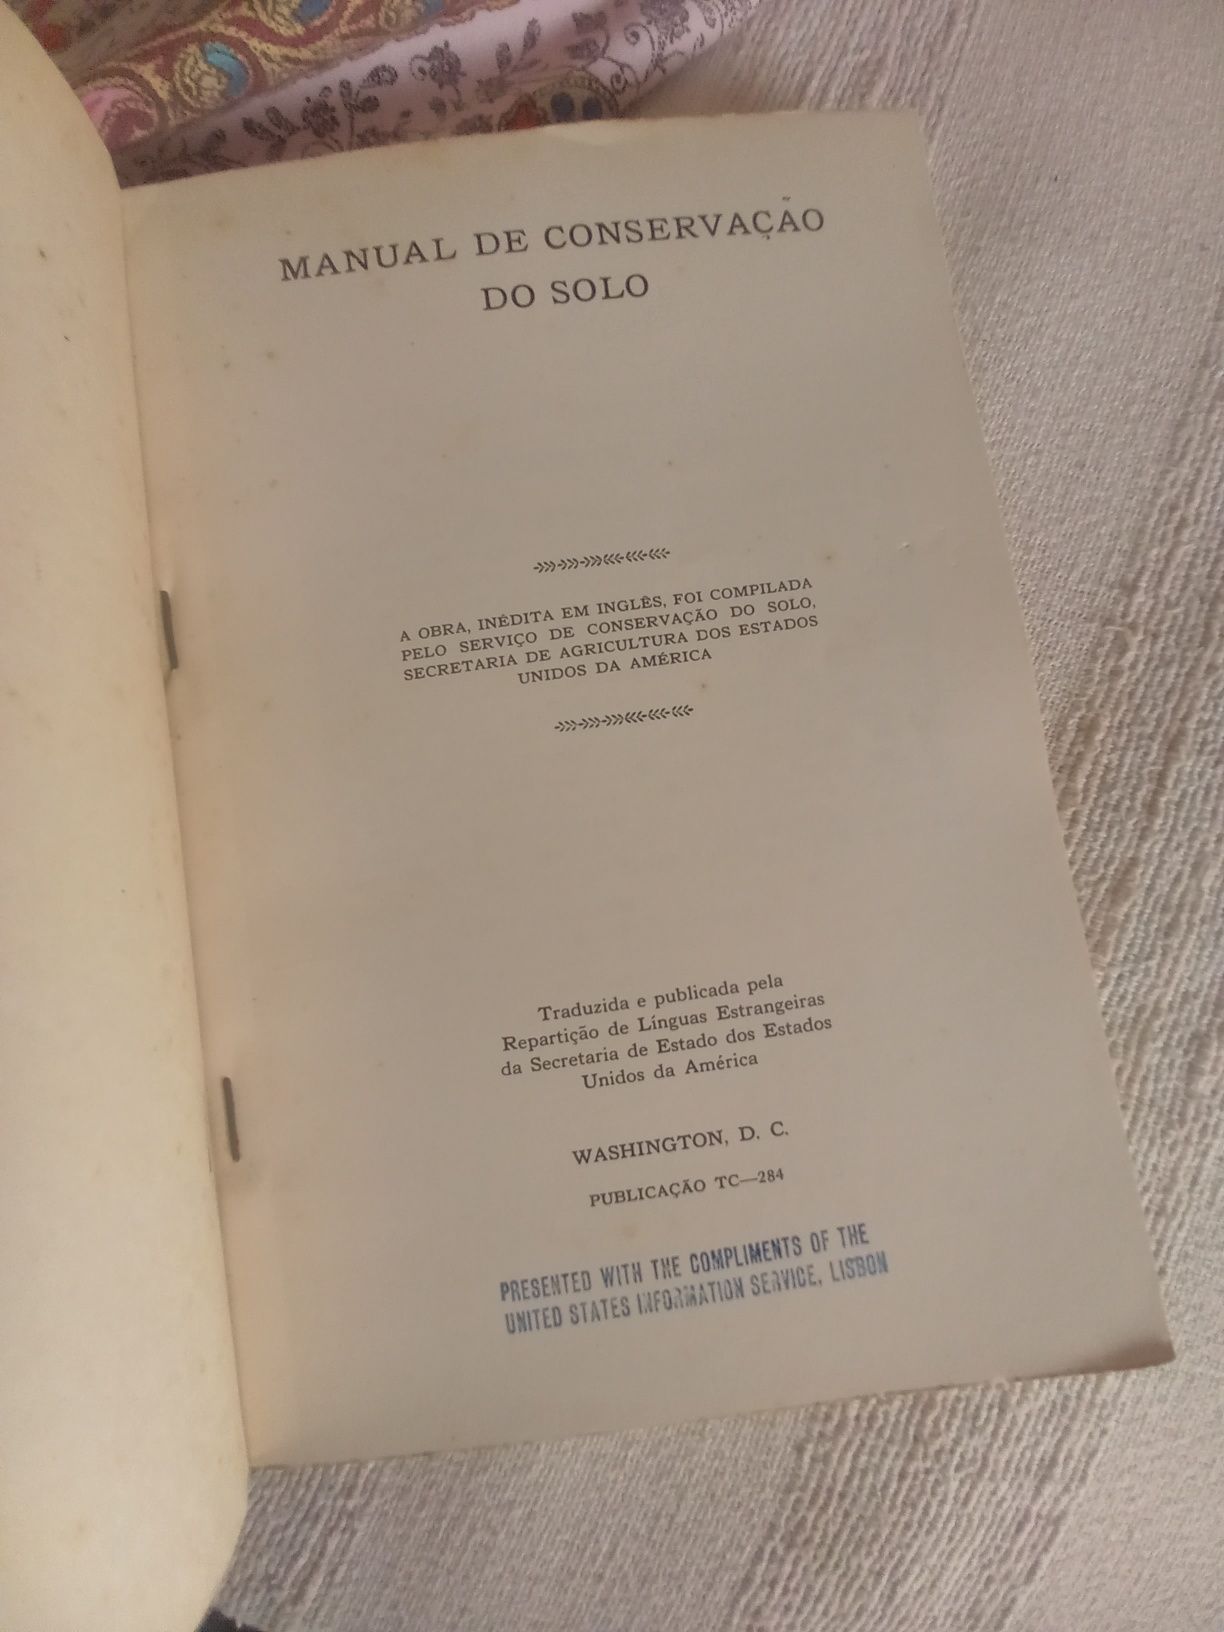 Manual de Conservação do Solo
Edição de 1 9 5 1